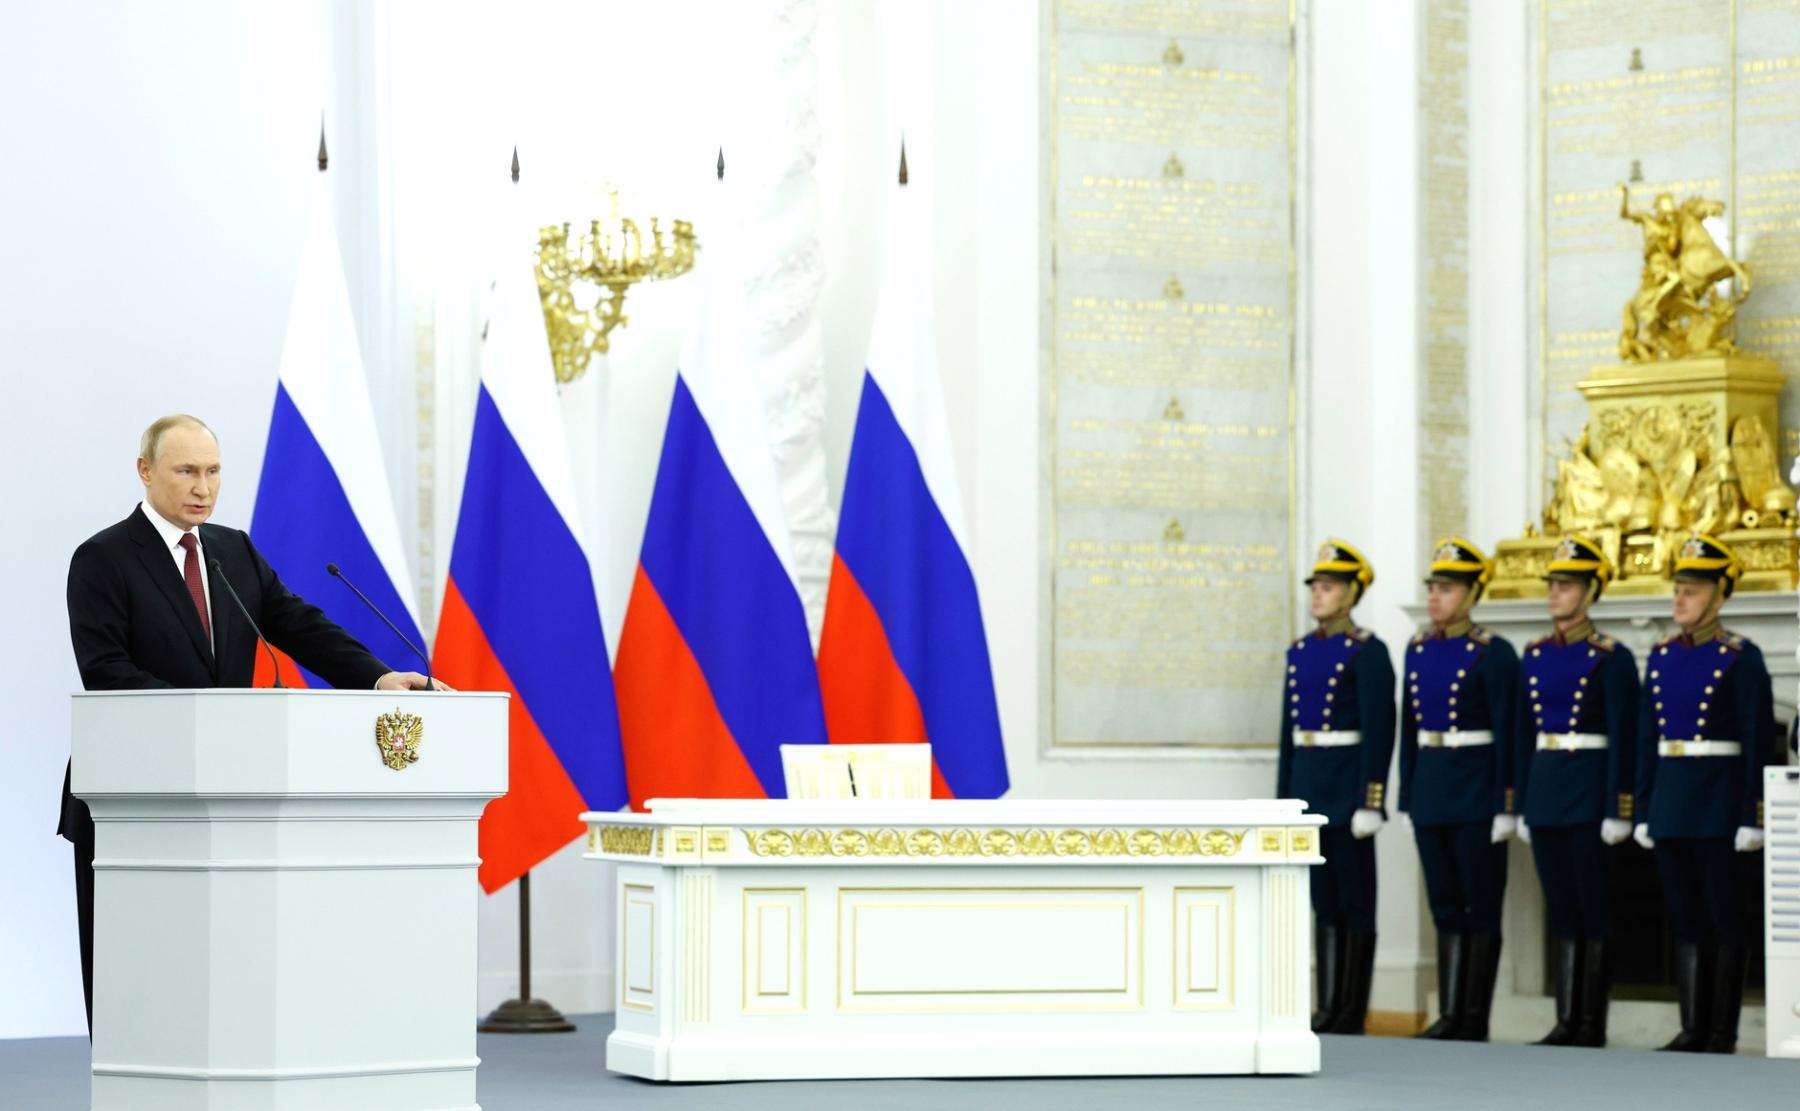 Фото Сколько теперь субъектов в России: Путин подписал договоры о включении новых территорий в состав РФ 4